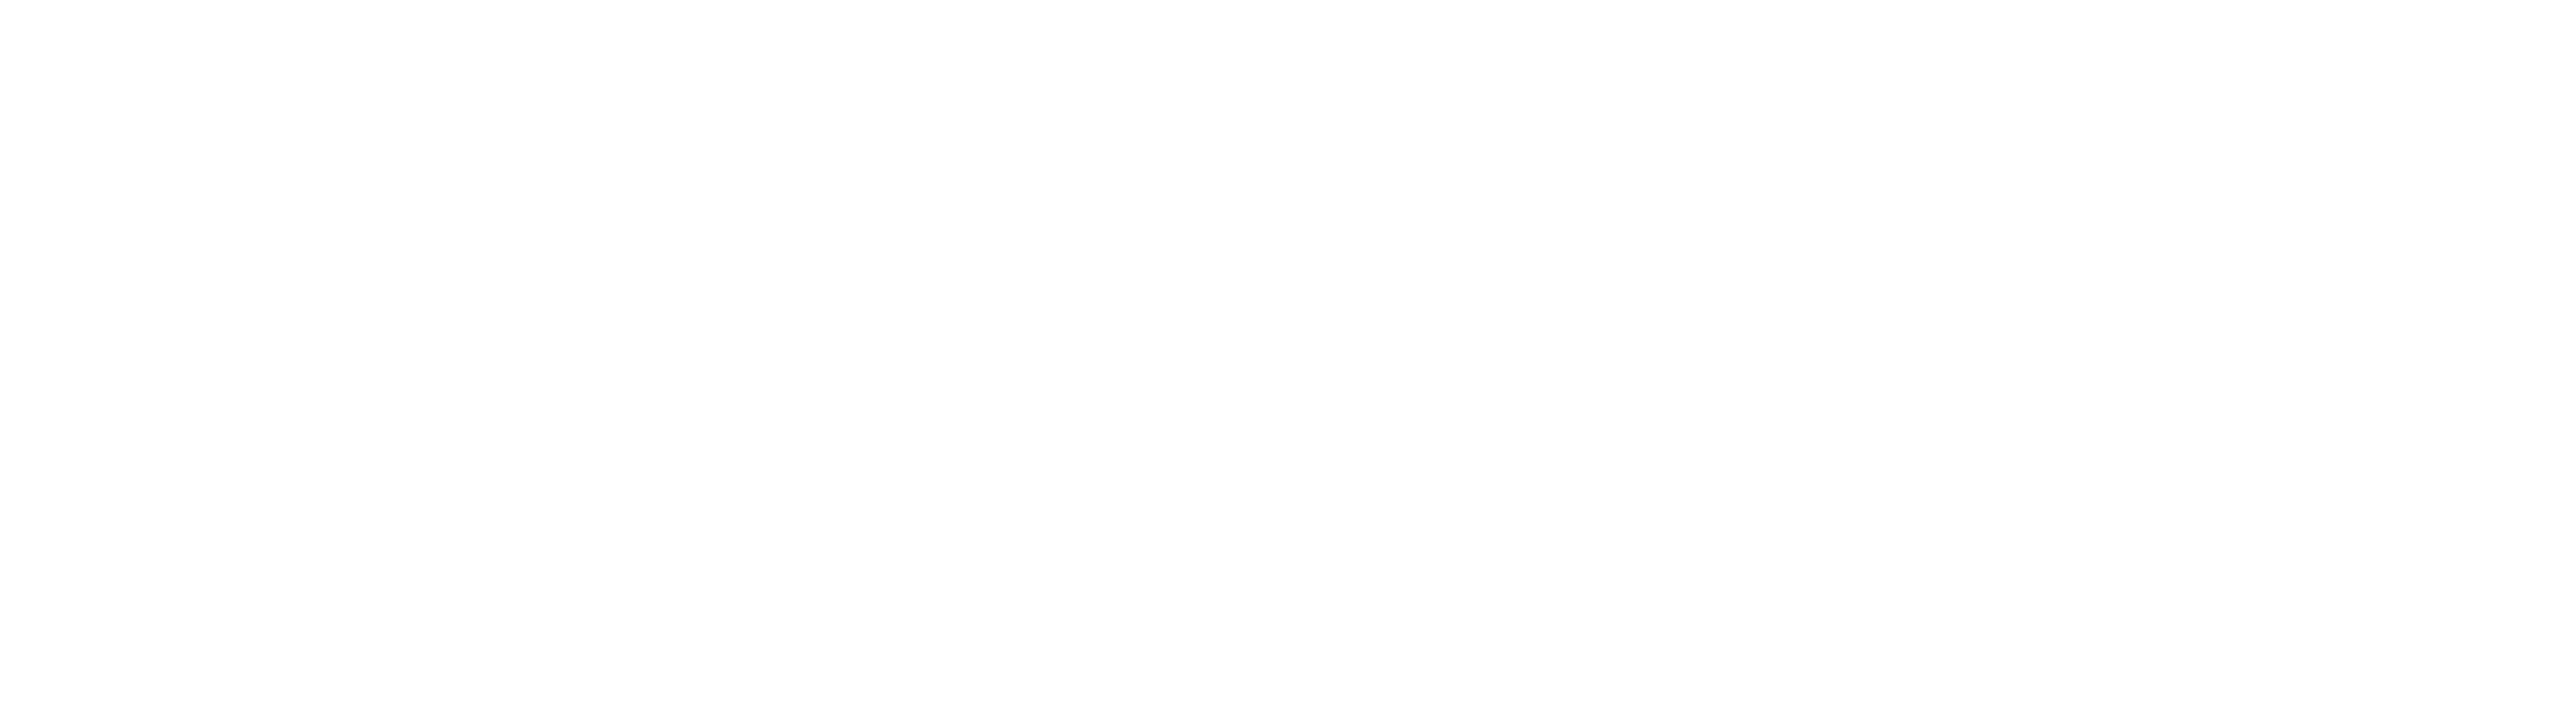 Scottwood custom homes logo